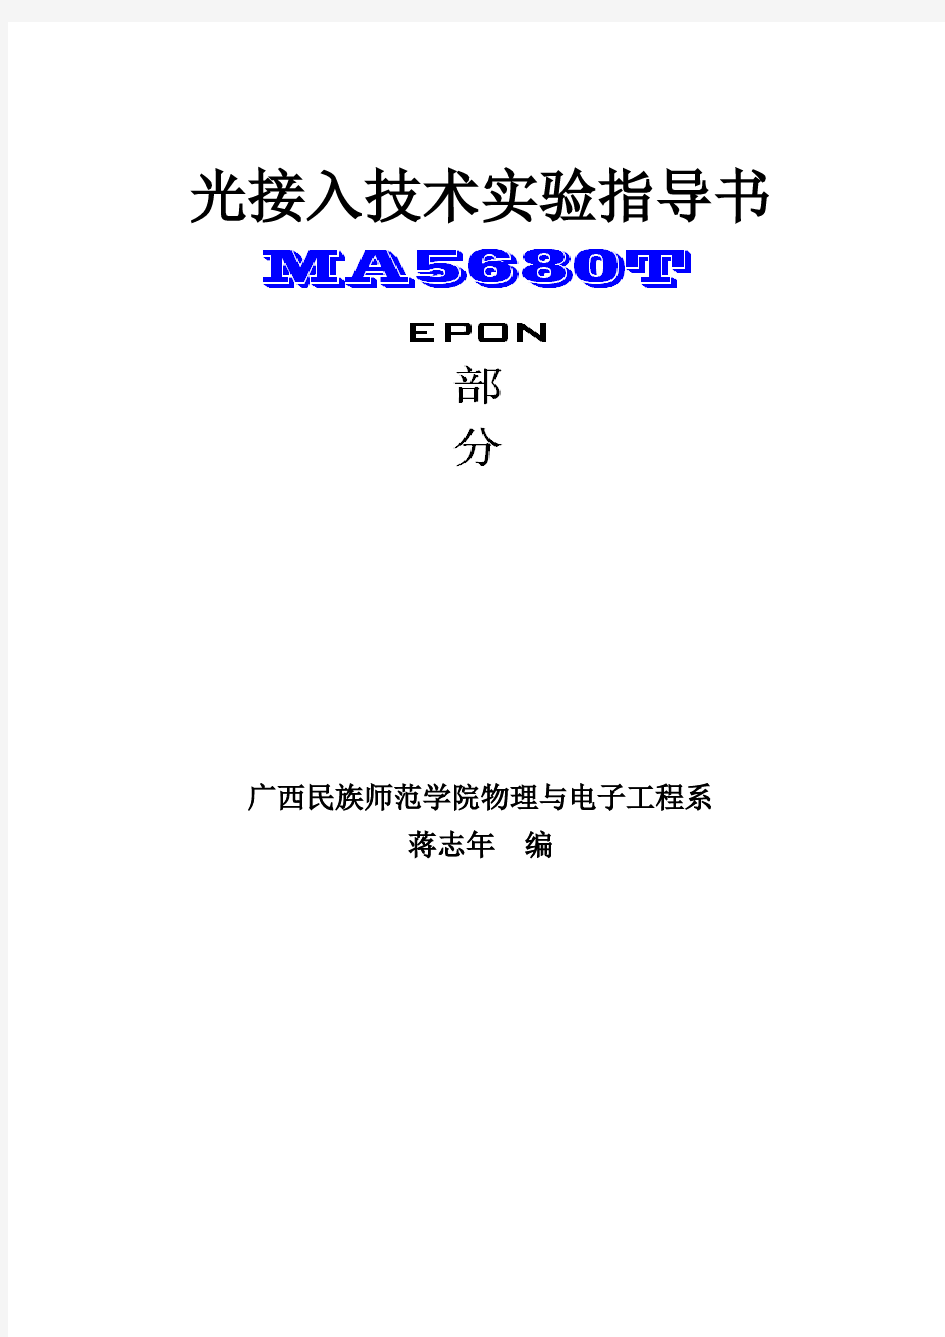 EPON—MA5680T实验指导书(蒋志年主编)上课用